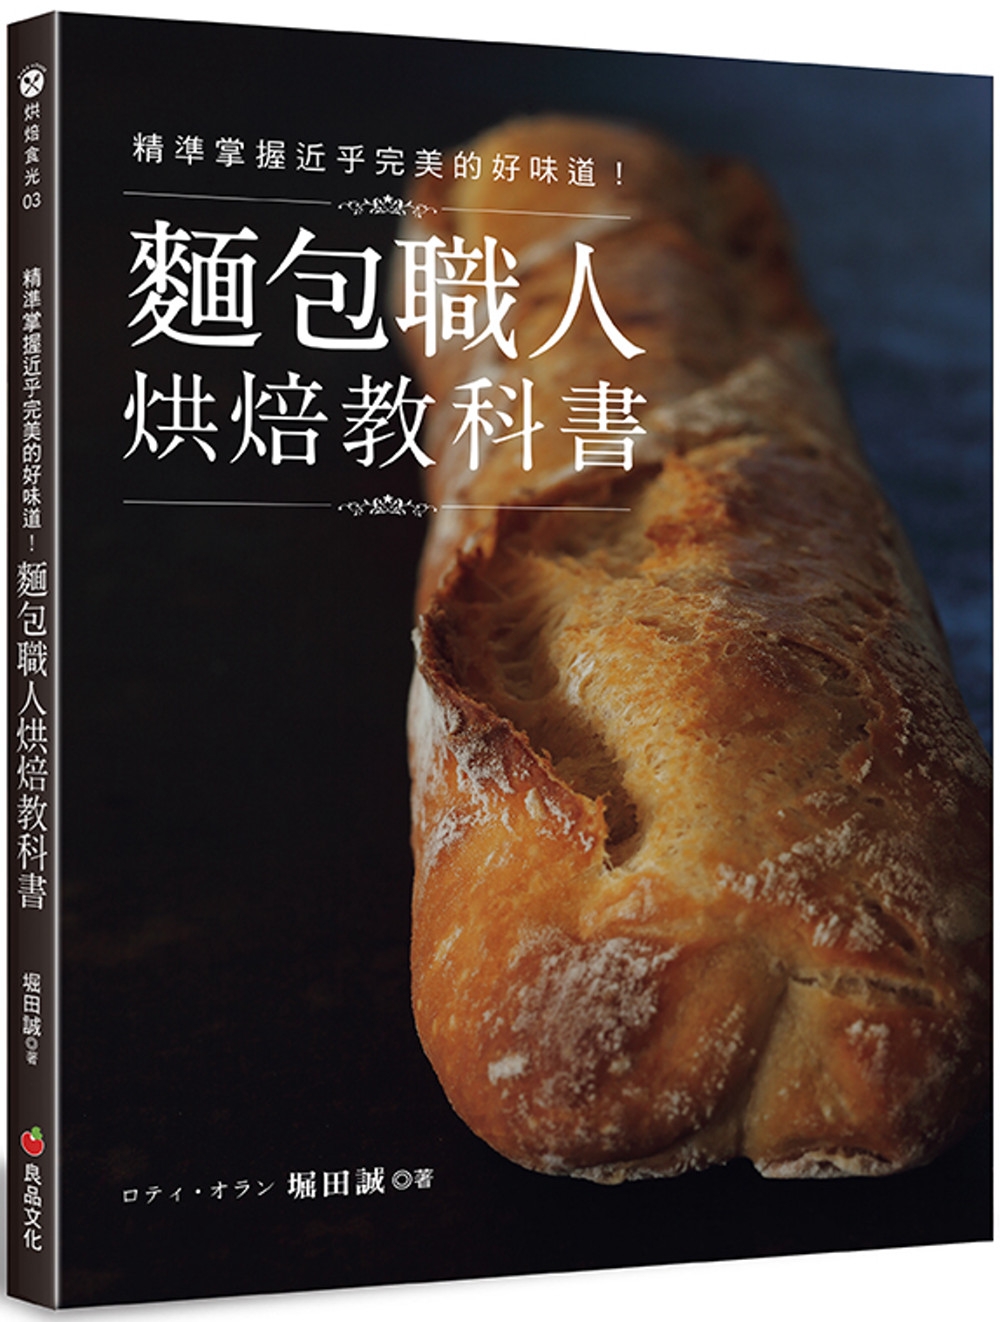 精準掌握近乎完美的好味道!麵包職人烘焙教科書(二版)